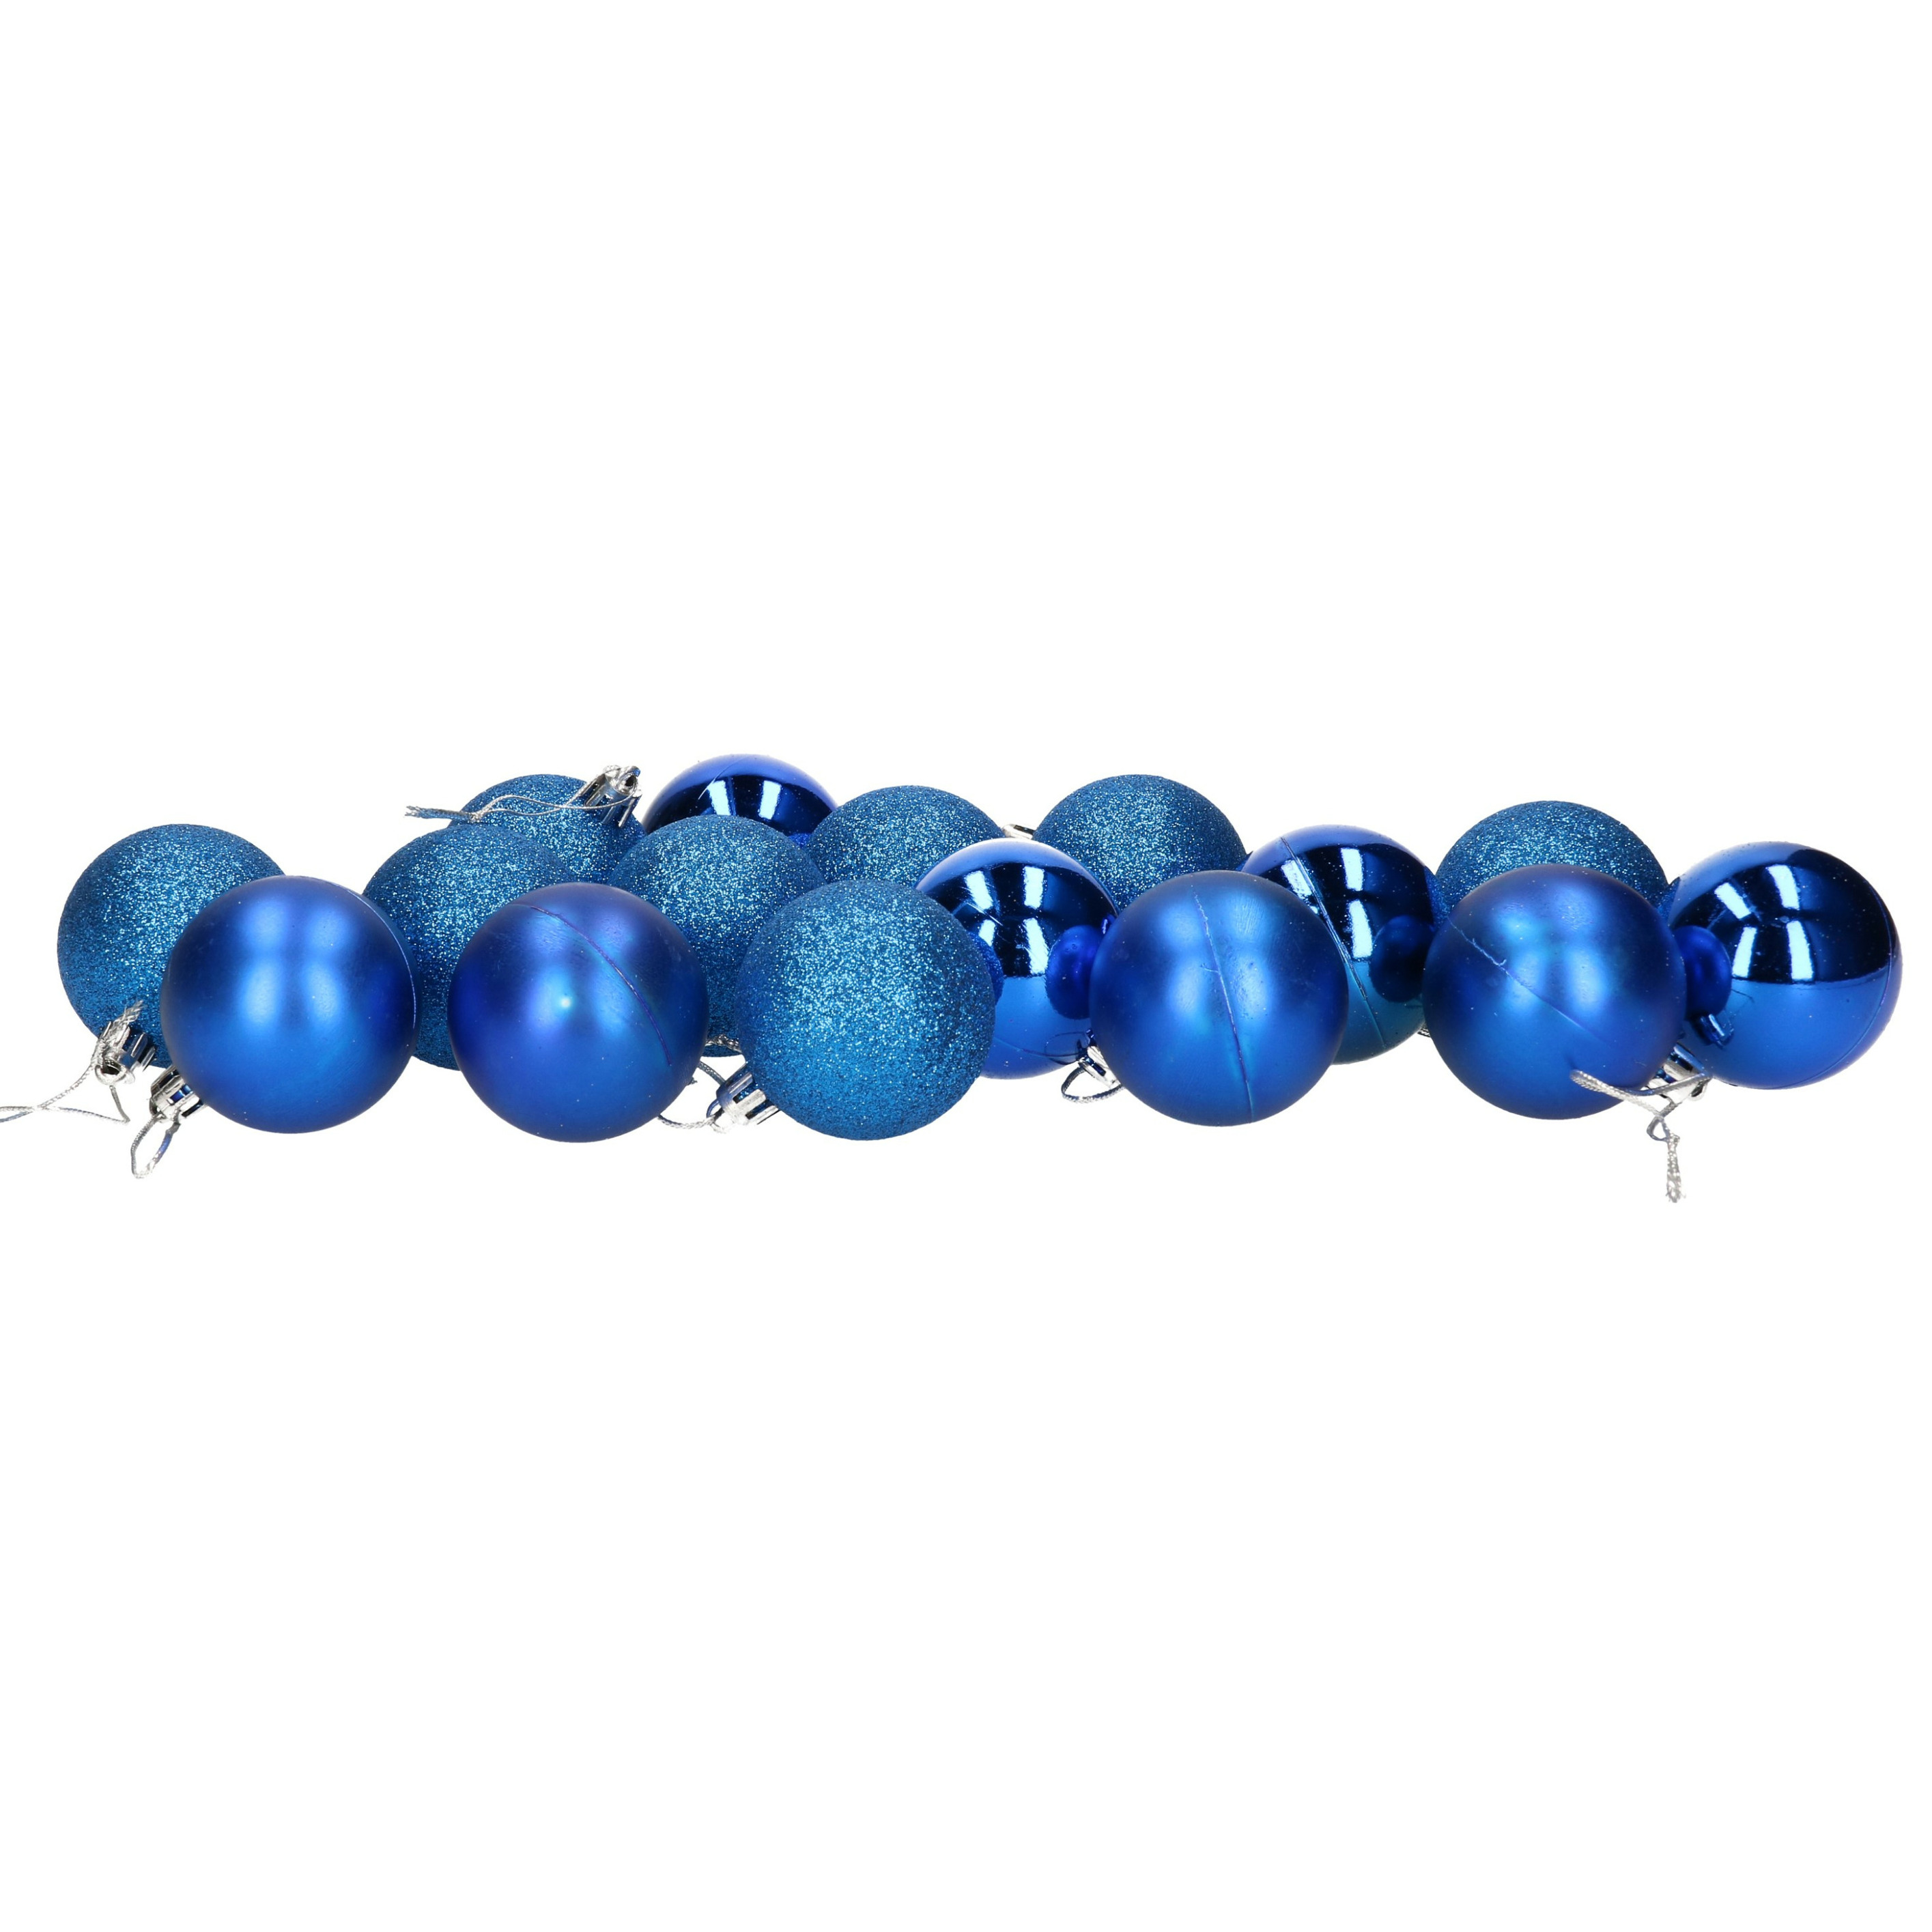 16x stuks kerstballen blauw mix van mat-glans-glitter kunststof 5 cm